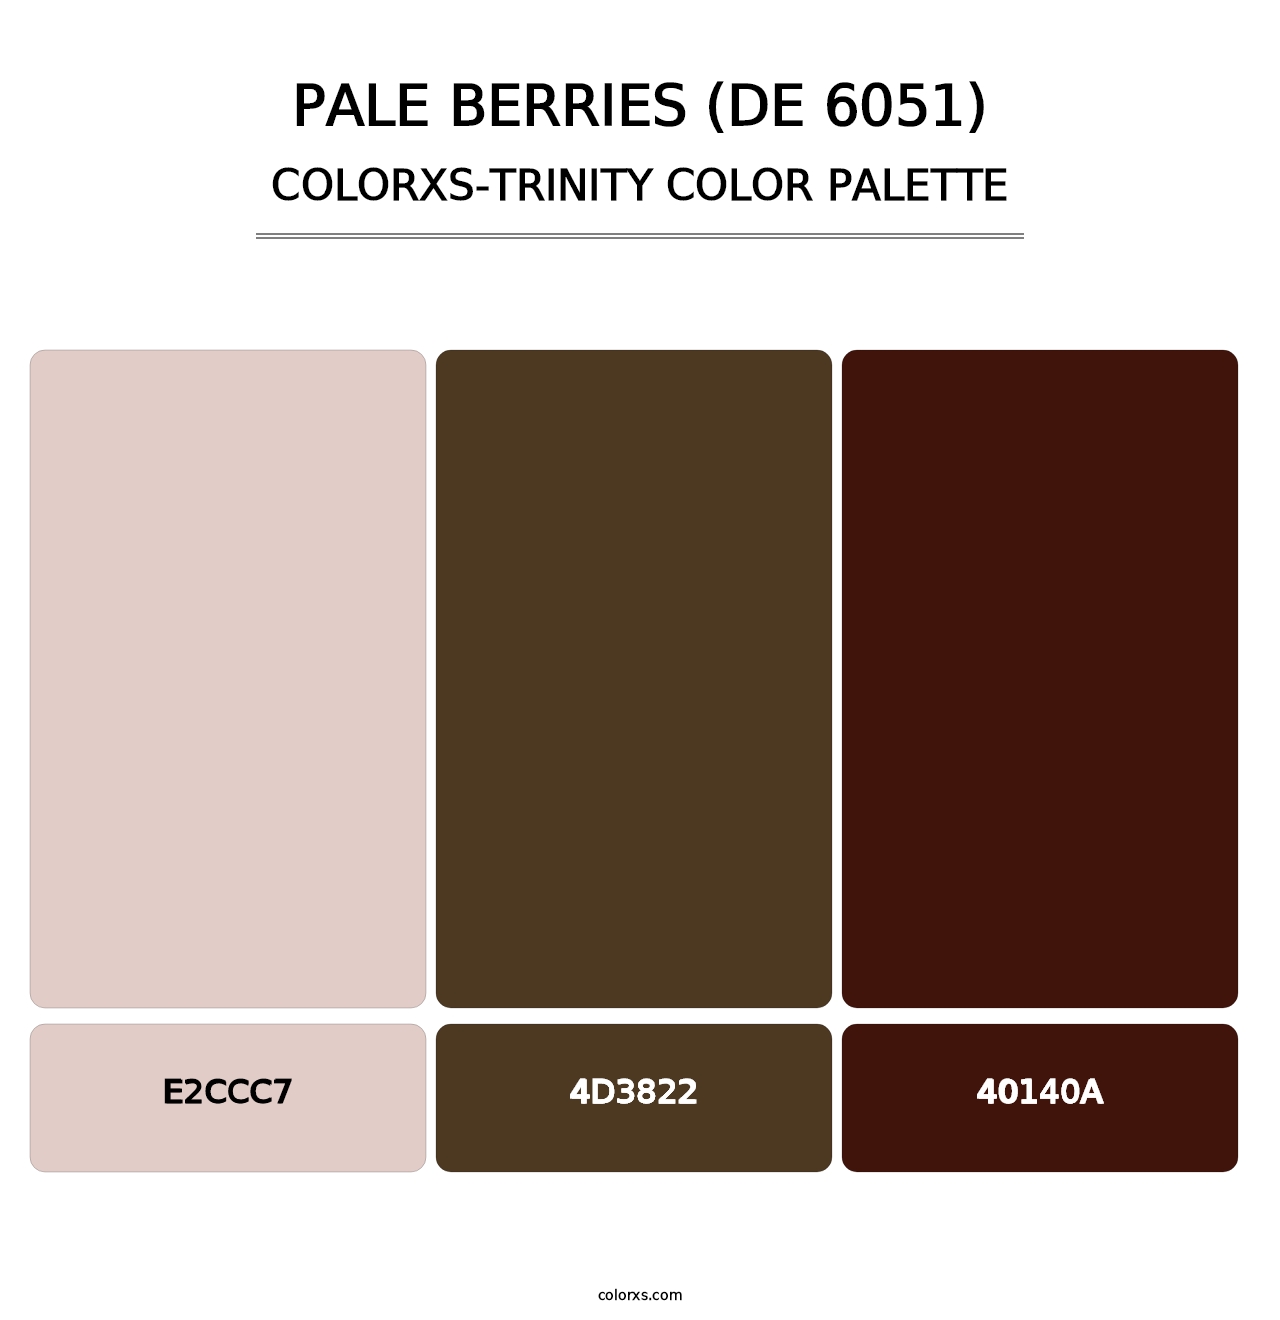 Pale Berries (DE 6051) - Colorxs Trinity Palette